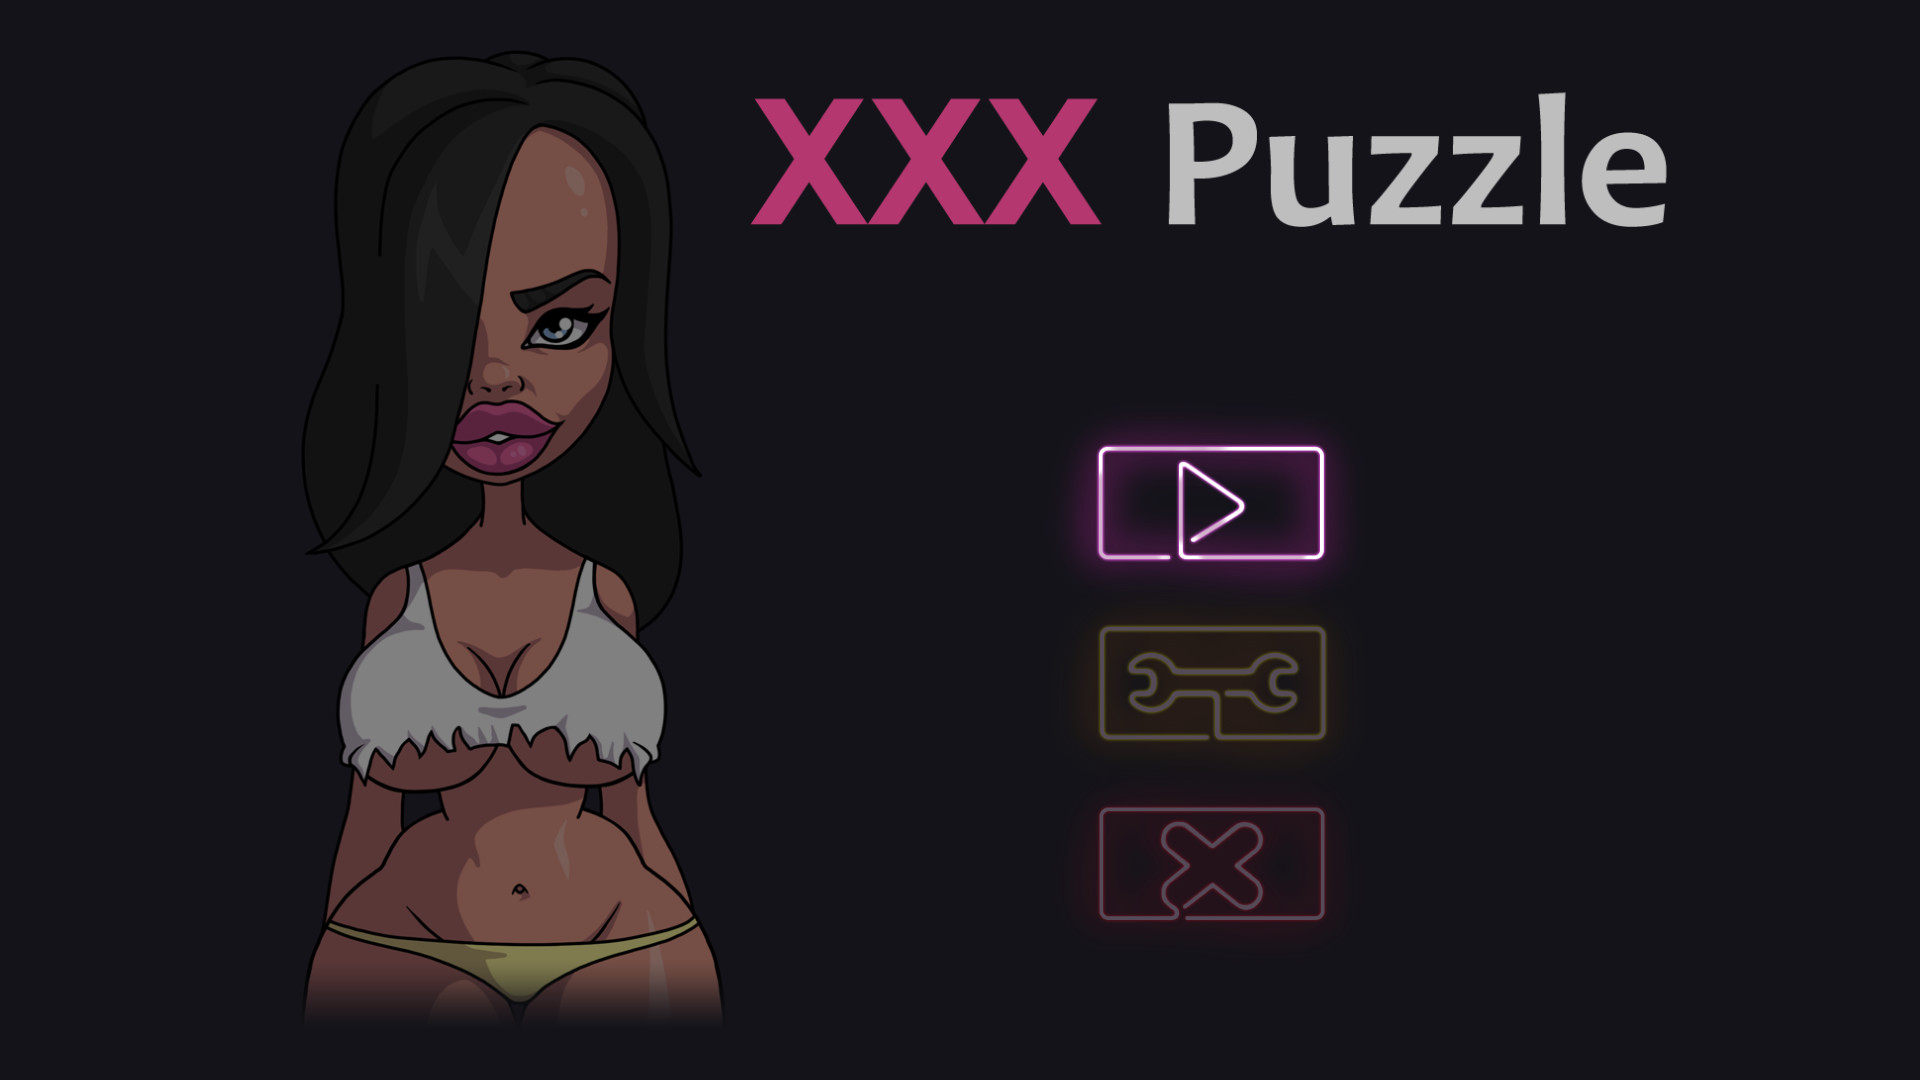 XXX Puzzle screenshot